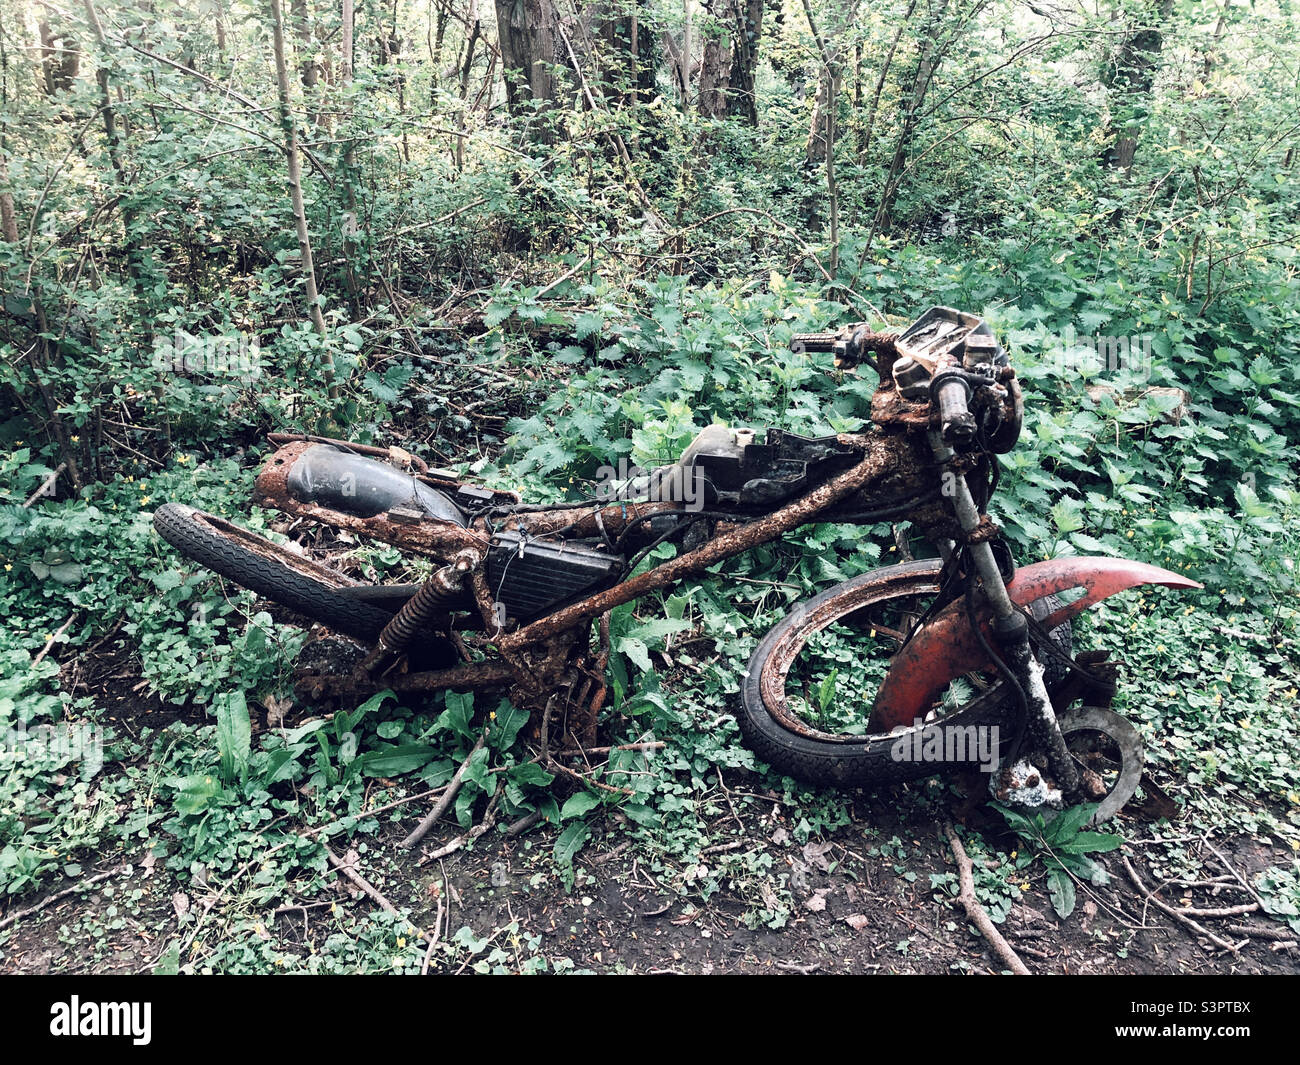 Moto abandonnée en décades Banque D'Images